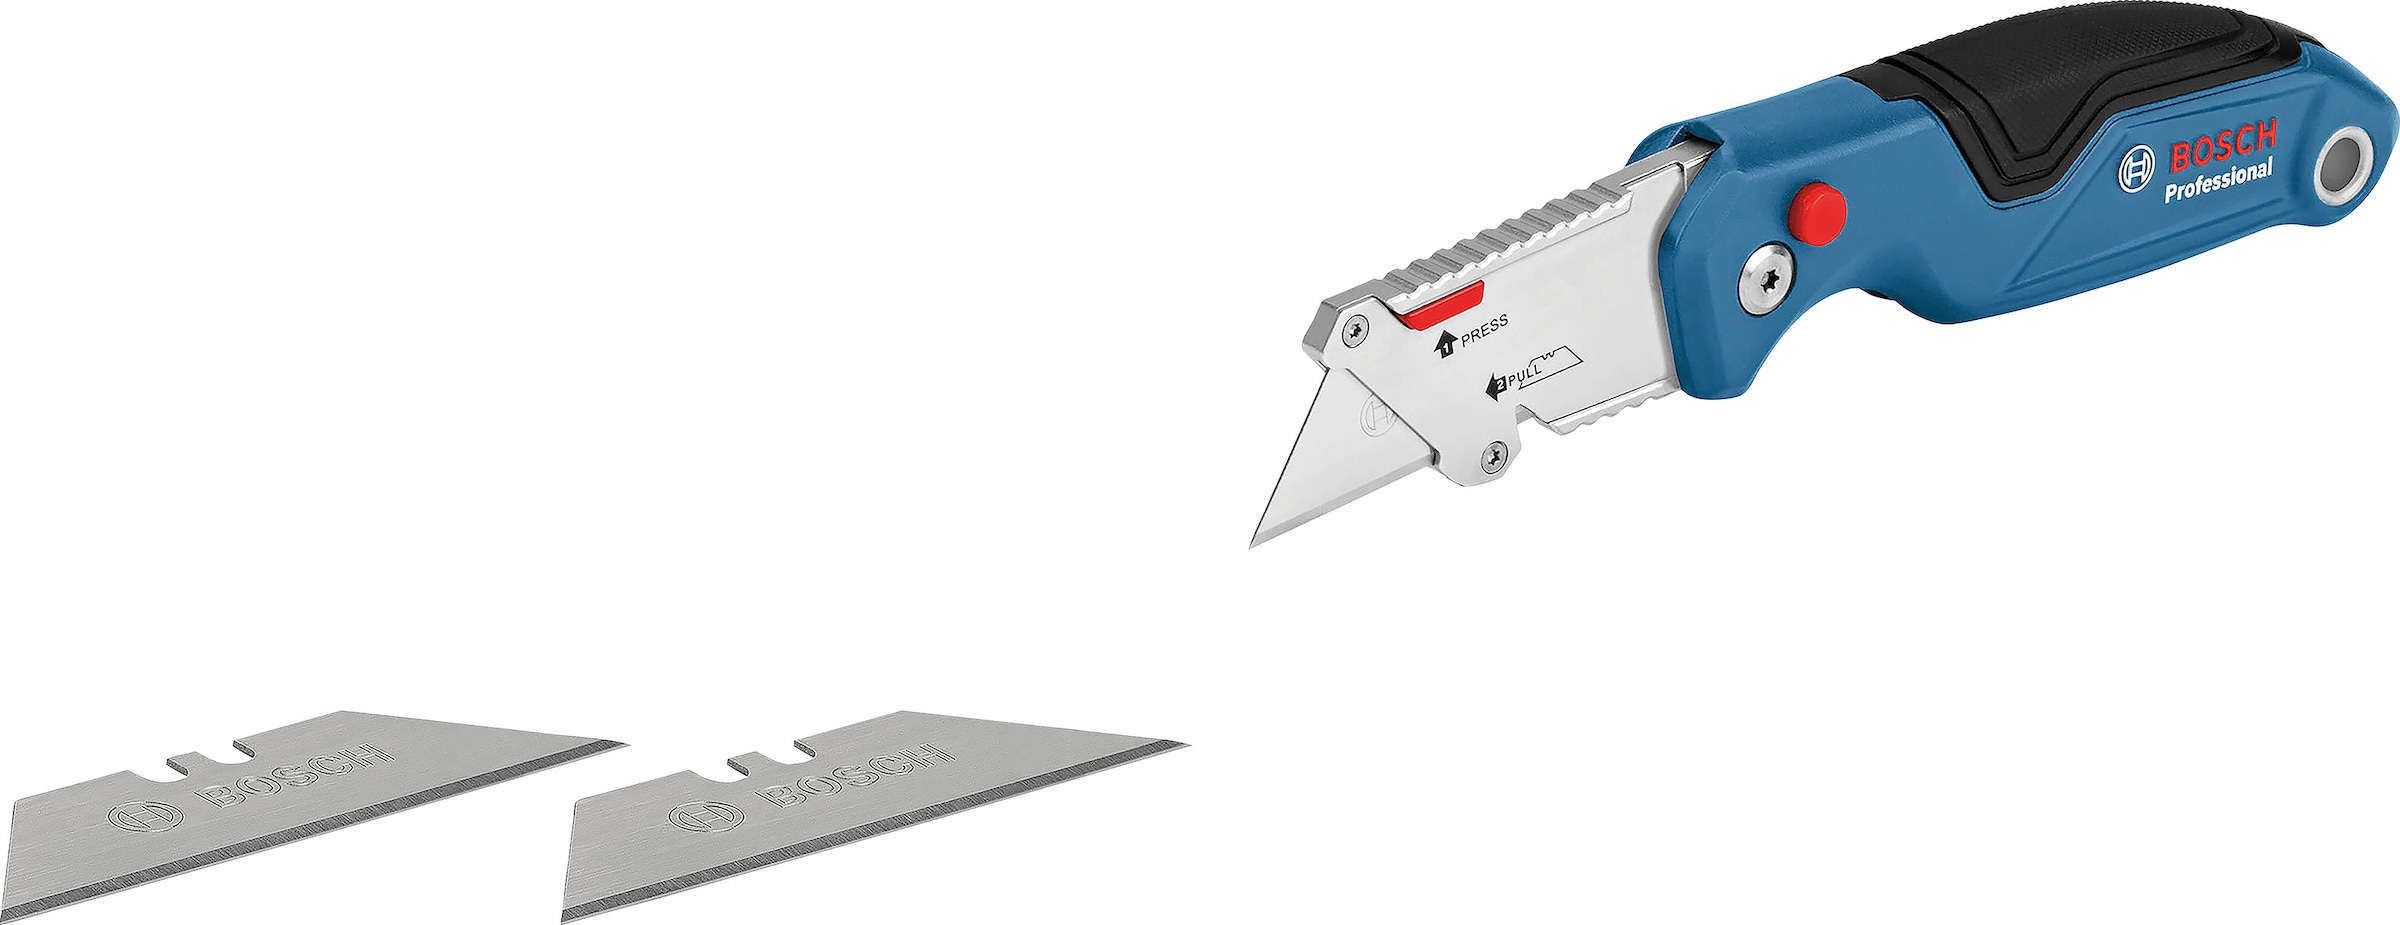 Bosch Professional Cuttermesser »(1600A016BM)«, (Set, 2 tlg.), bestehend  aus Universal- und Klappmesser online kaufen | mit 3 Jahren XXL Garantie